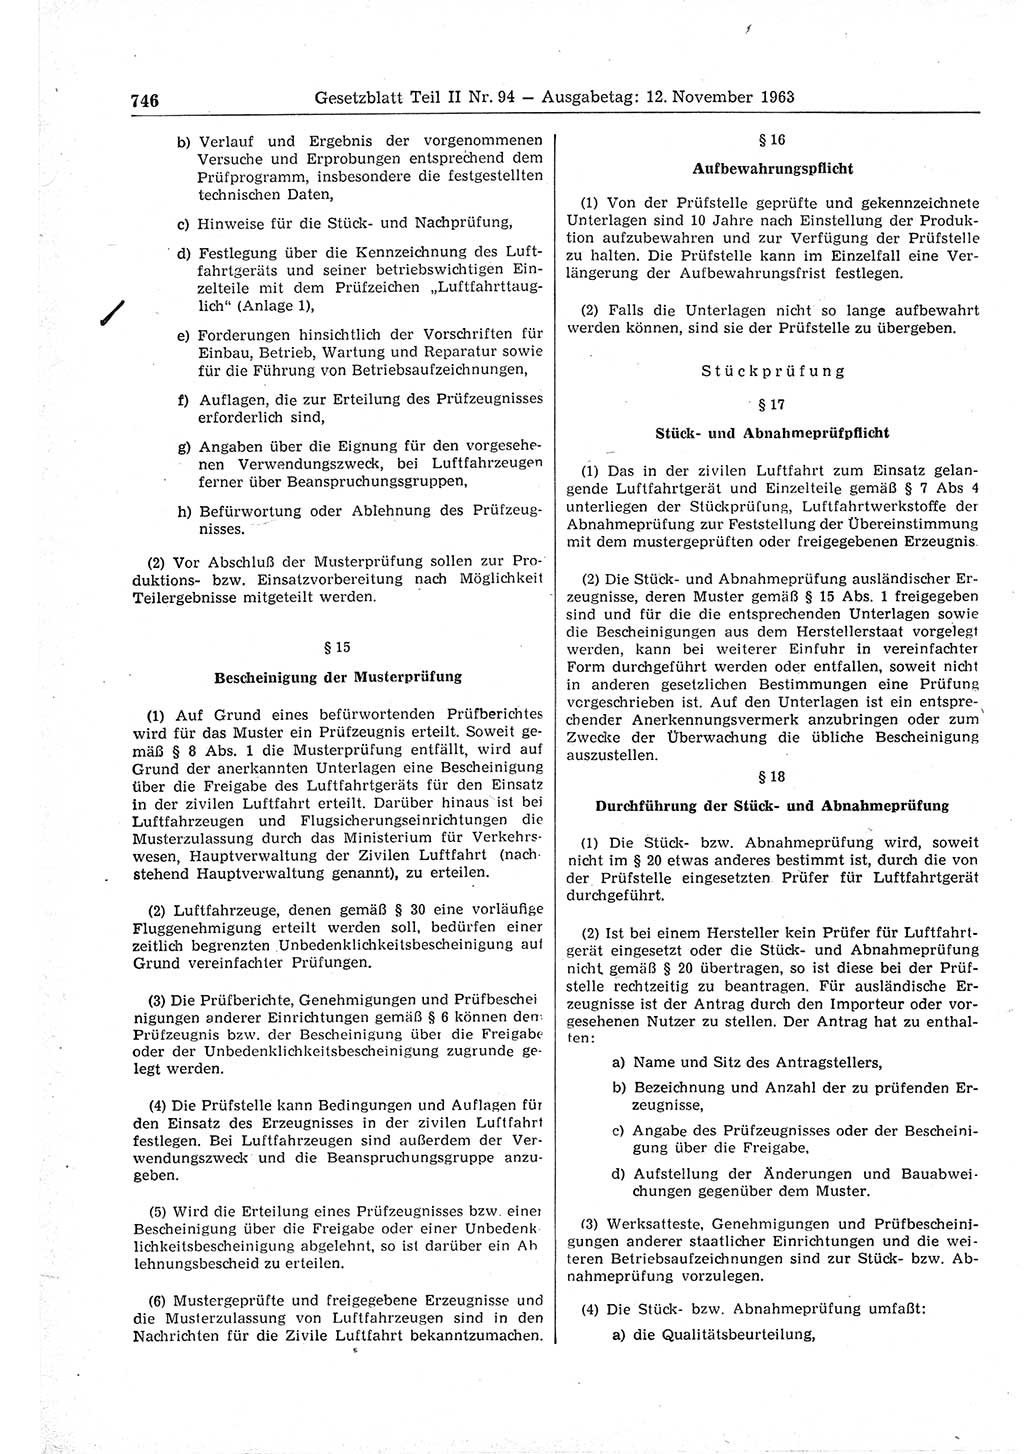 Gesetzblatt (GBl.) der Deutschen Demokratischen Republik (DDR) Teil ⅠⅠ 1963, Seite 746 (GBl. DDR ⅠⅠ 1963, S. 746)